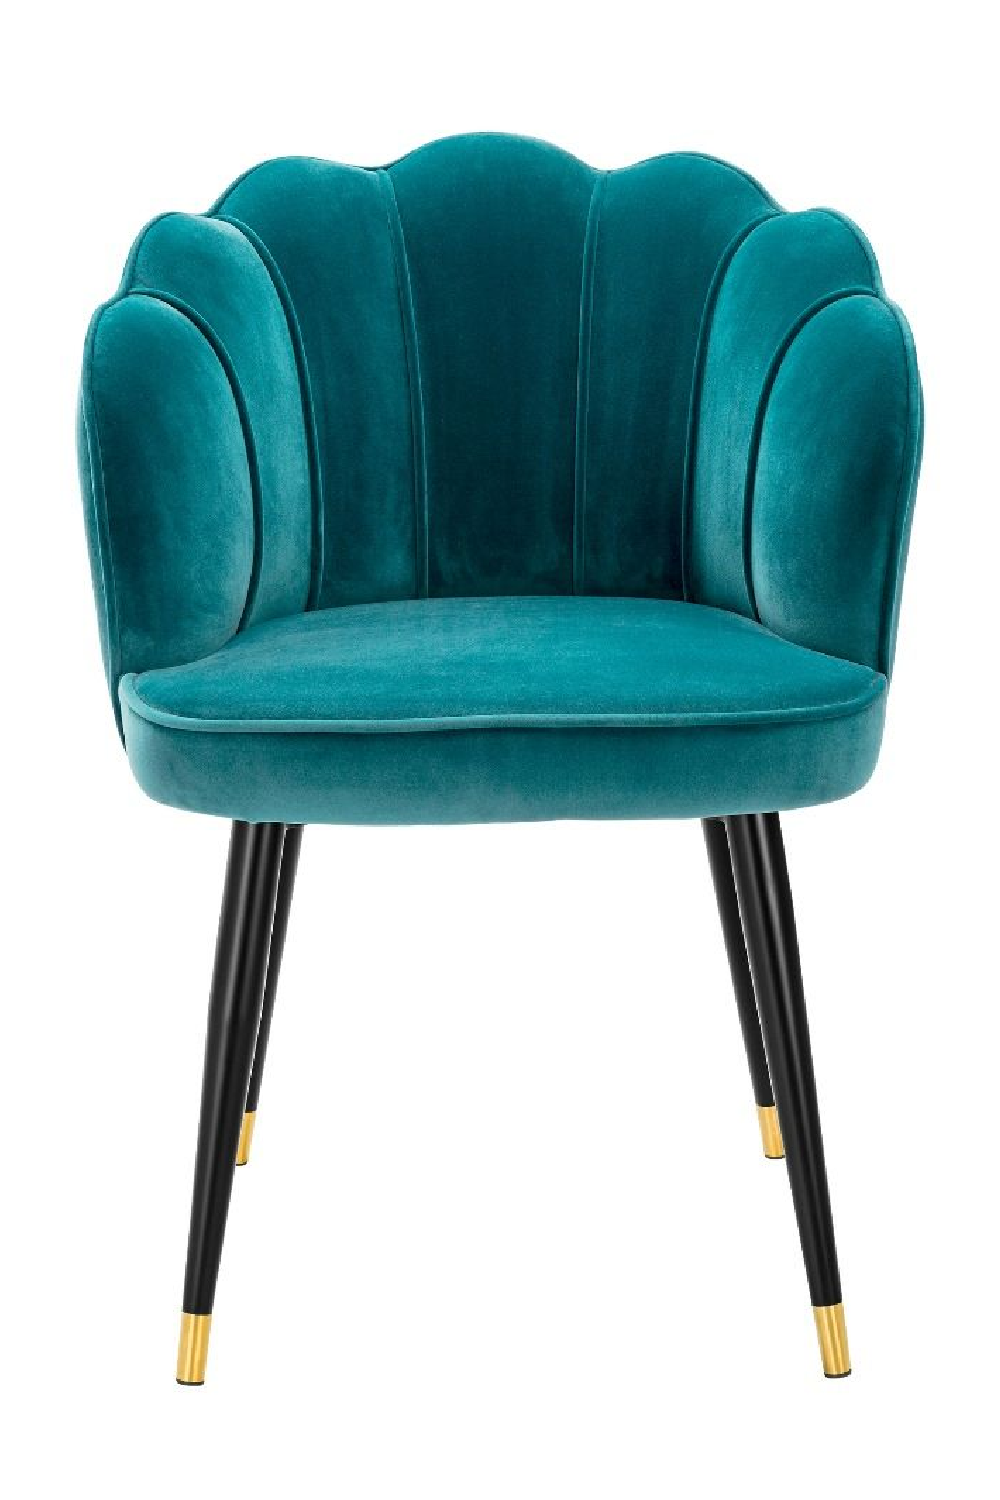 Blue Scalloped Dining Chair | Eichholtz Bristol